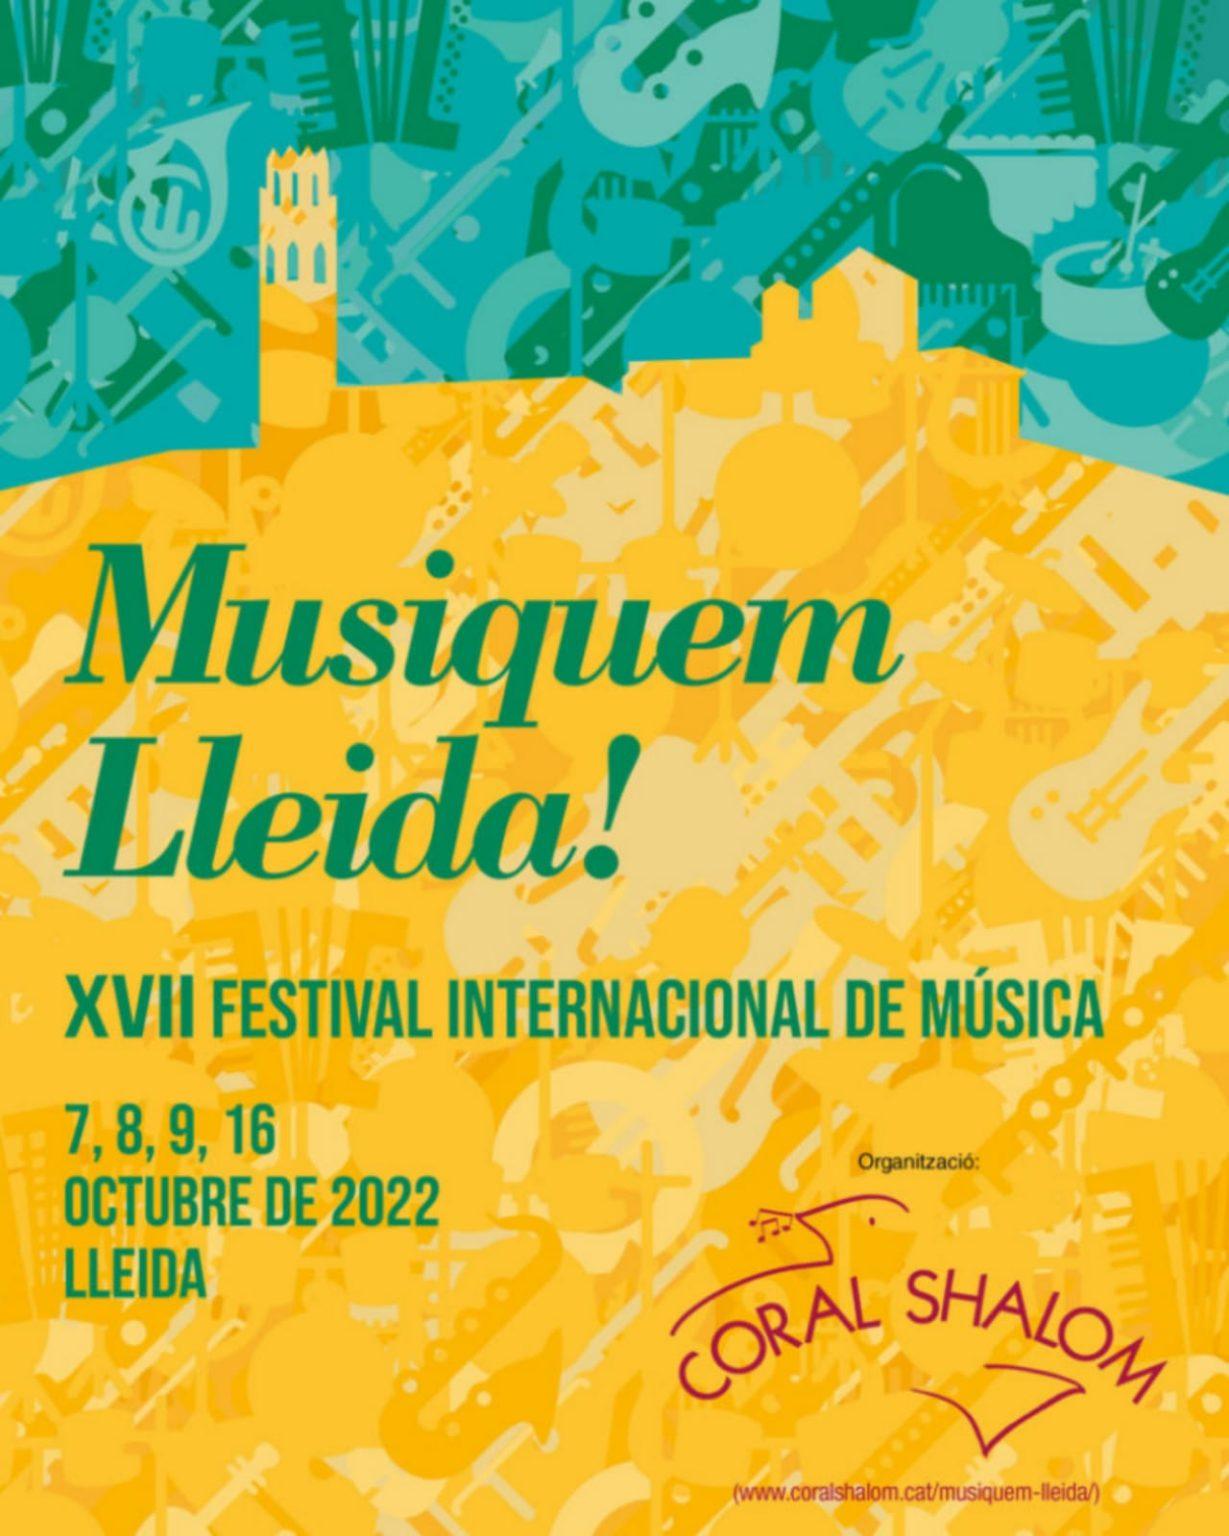 Raúl Viela - Musiquem Lleida!